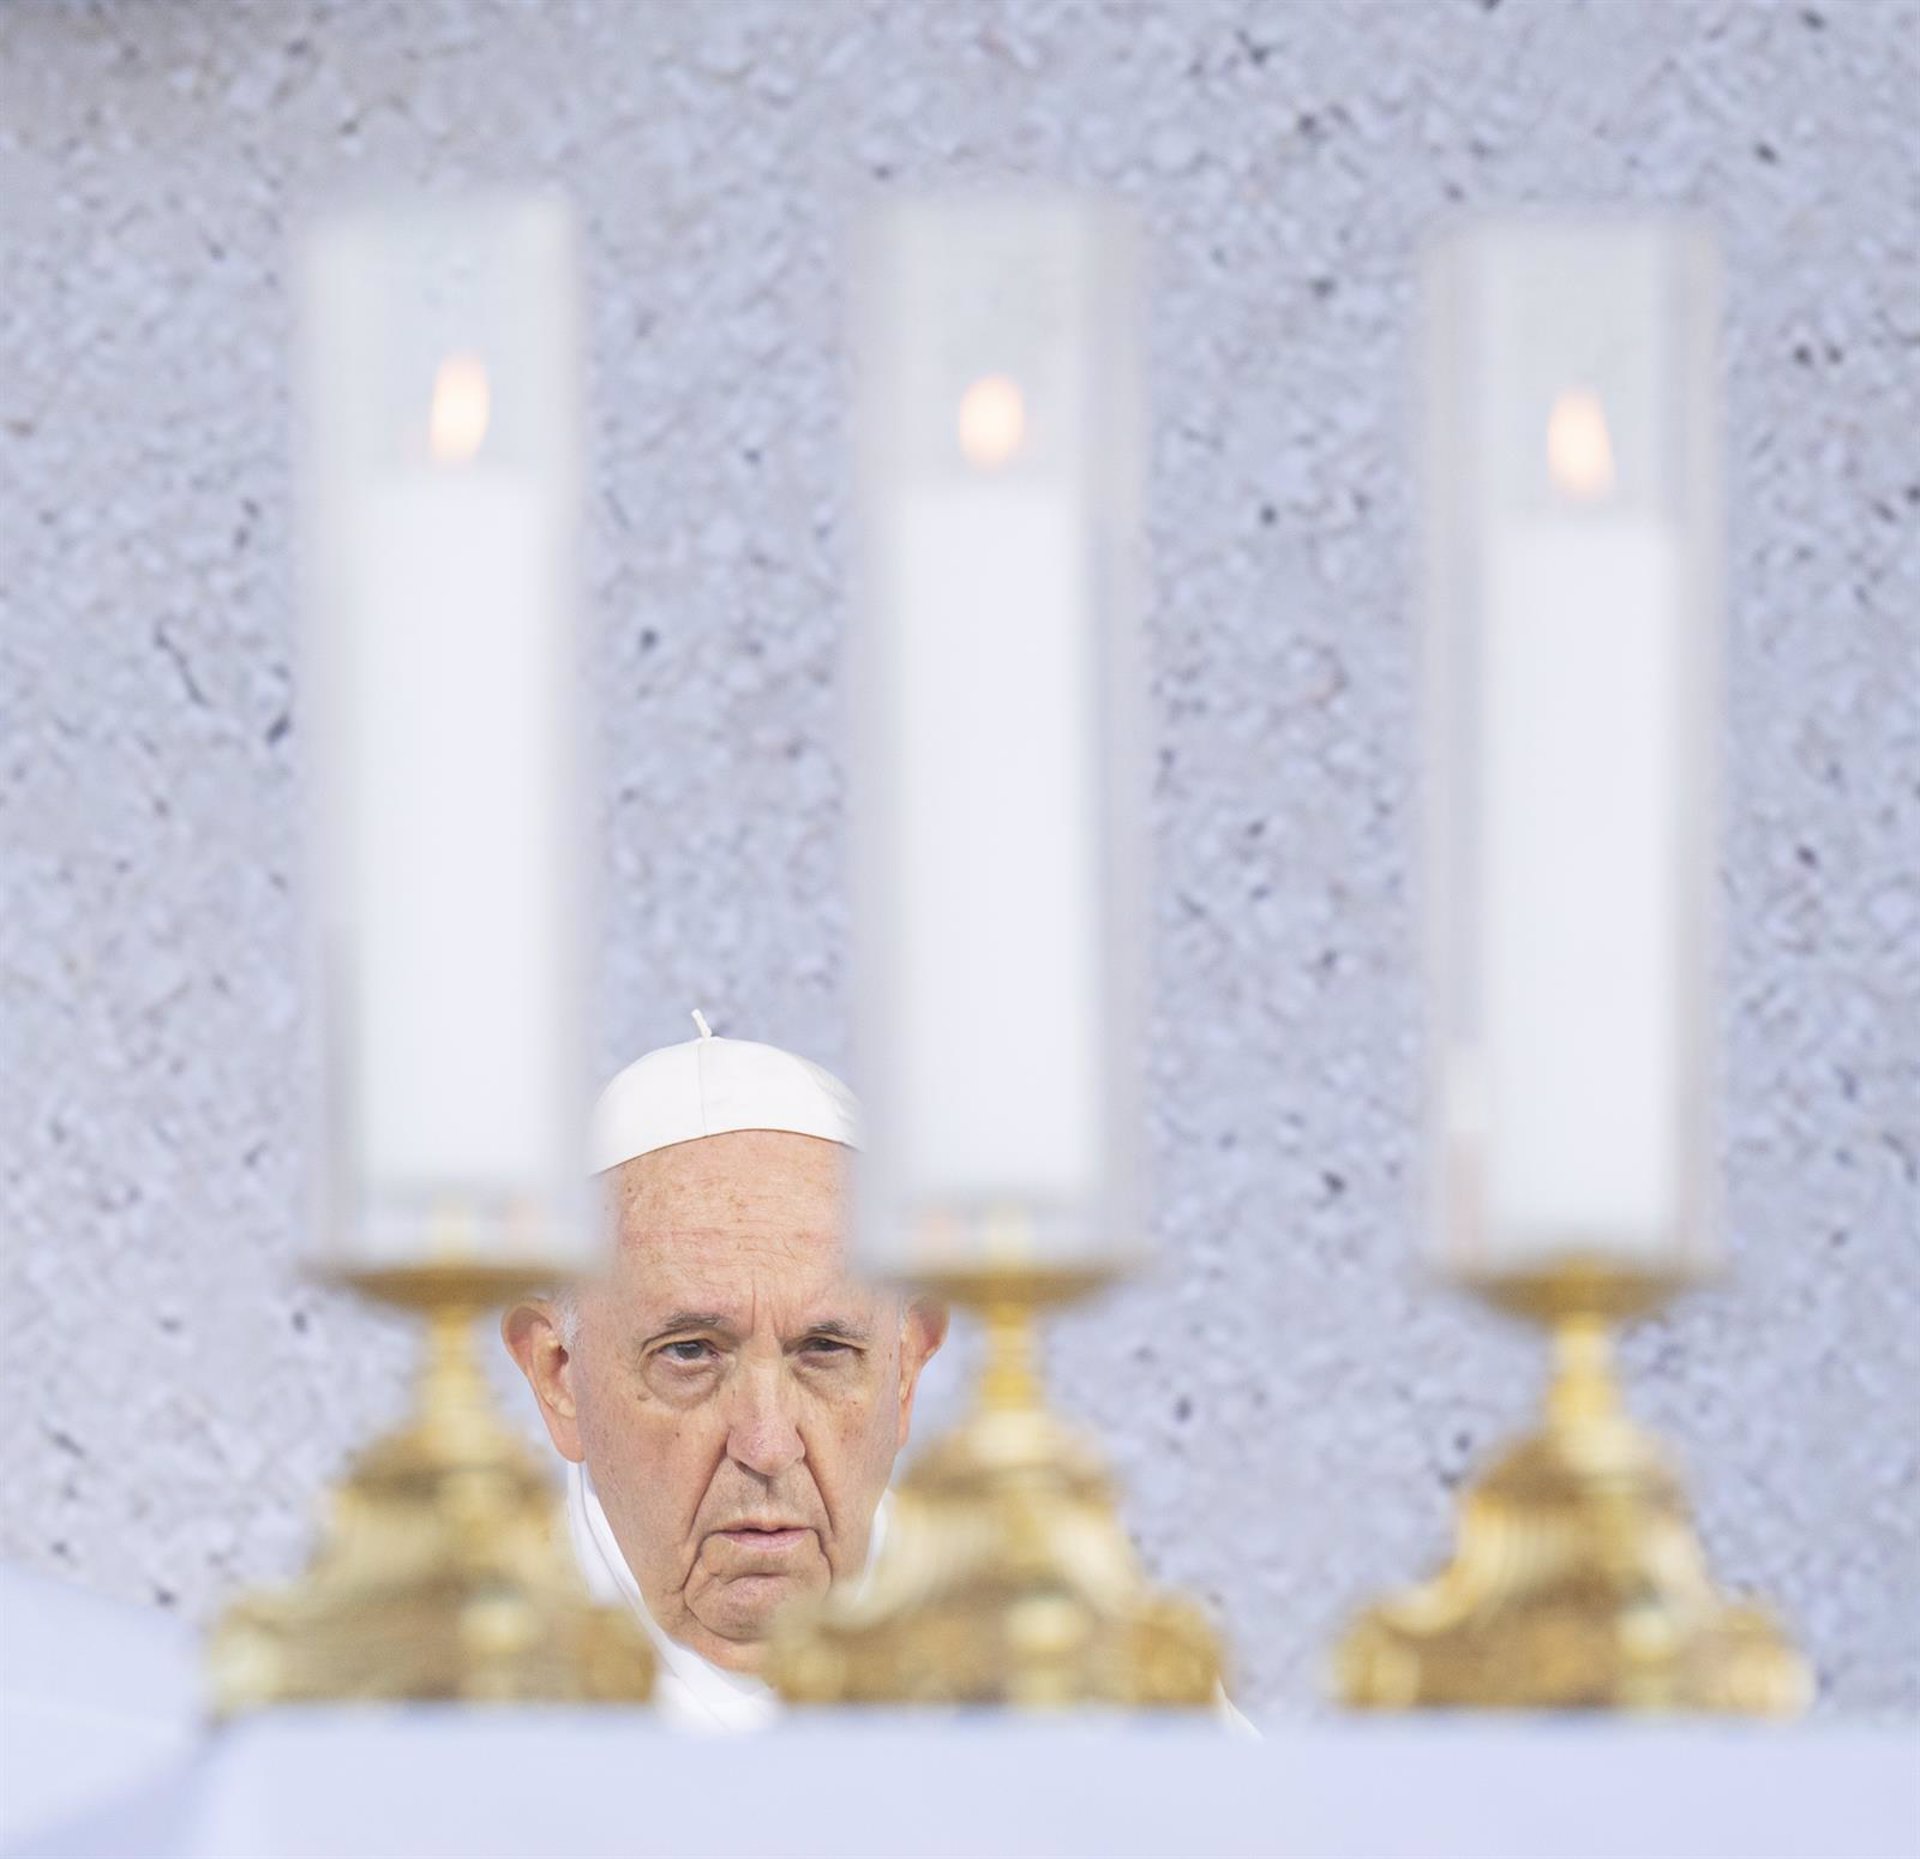 El Papa expresa su "vergüenza" por la "incapacidad de la Iglesia" en actuar ante los casos de abusos sexuales